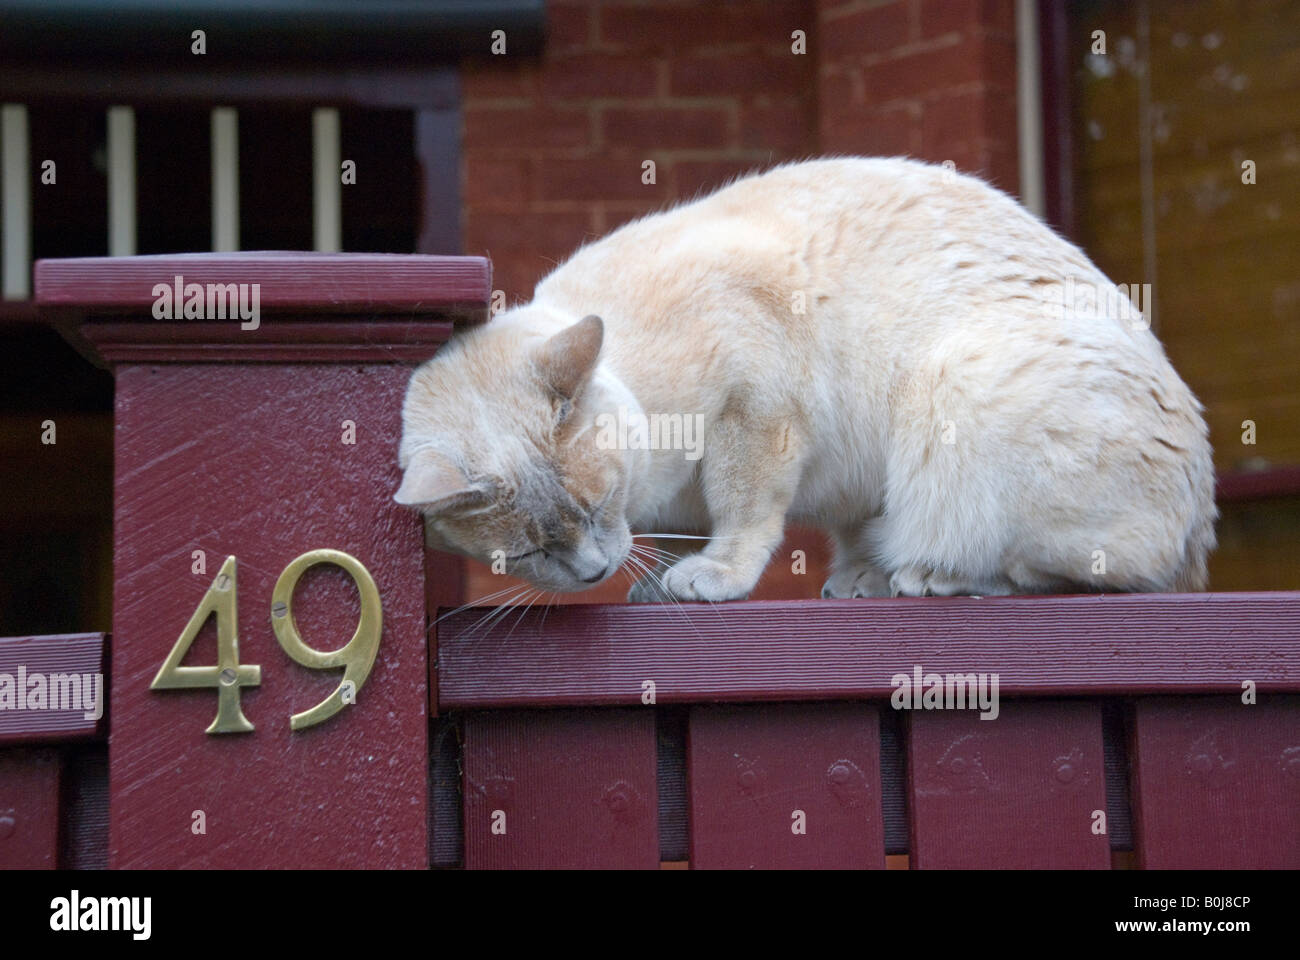 Un chat domestique marquant son territoire en frottant ses glandes odoriférantes contre une porte poster Banque D'Images